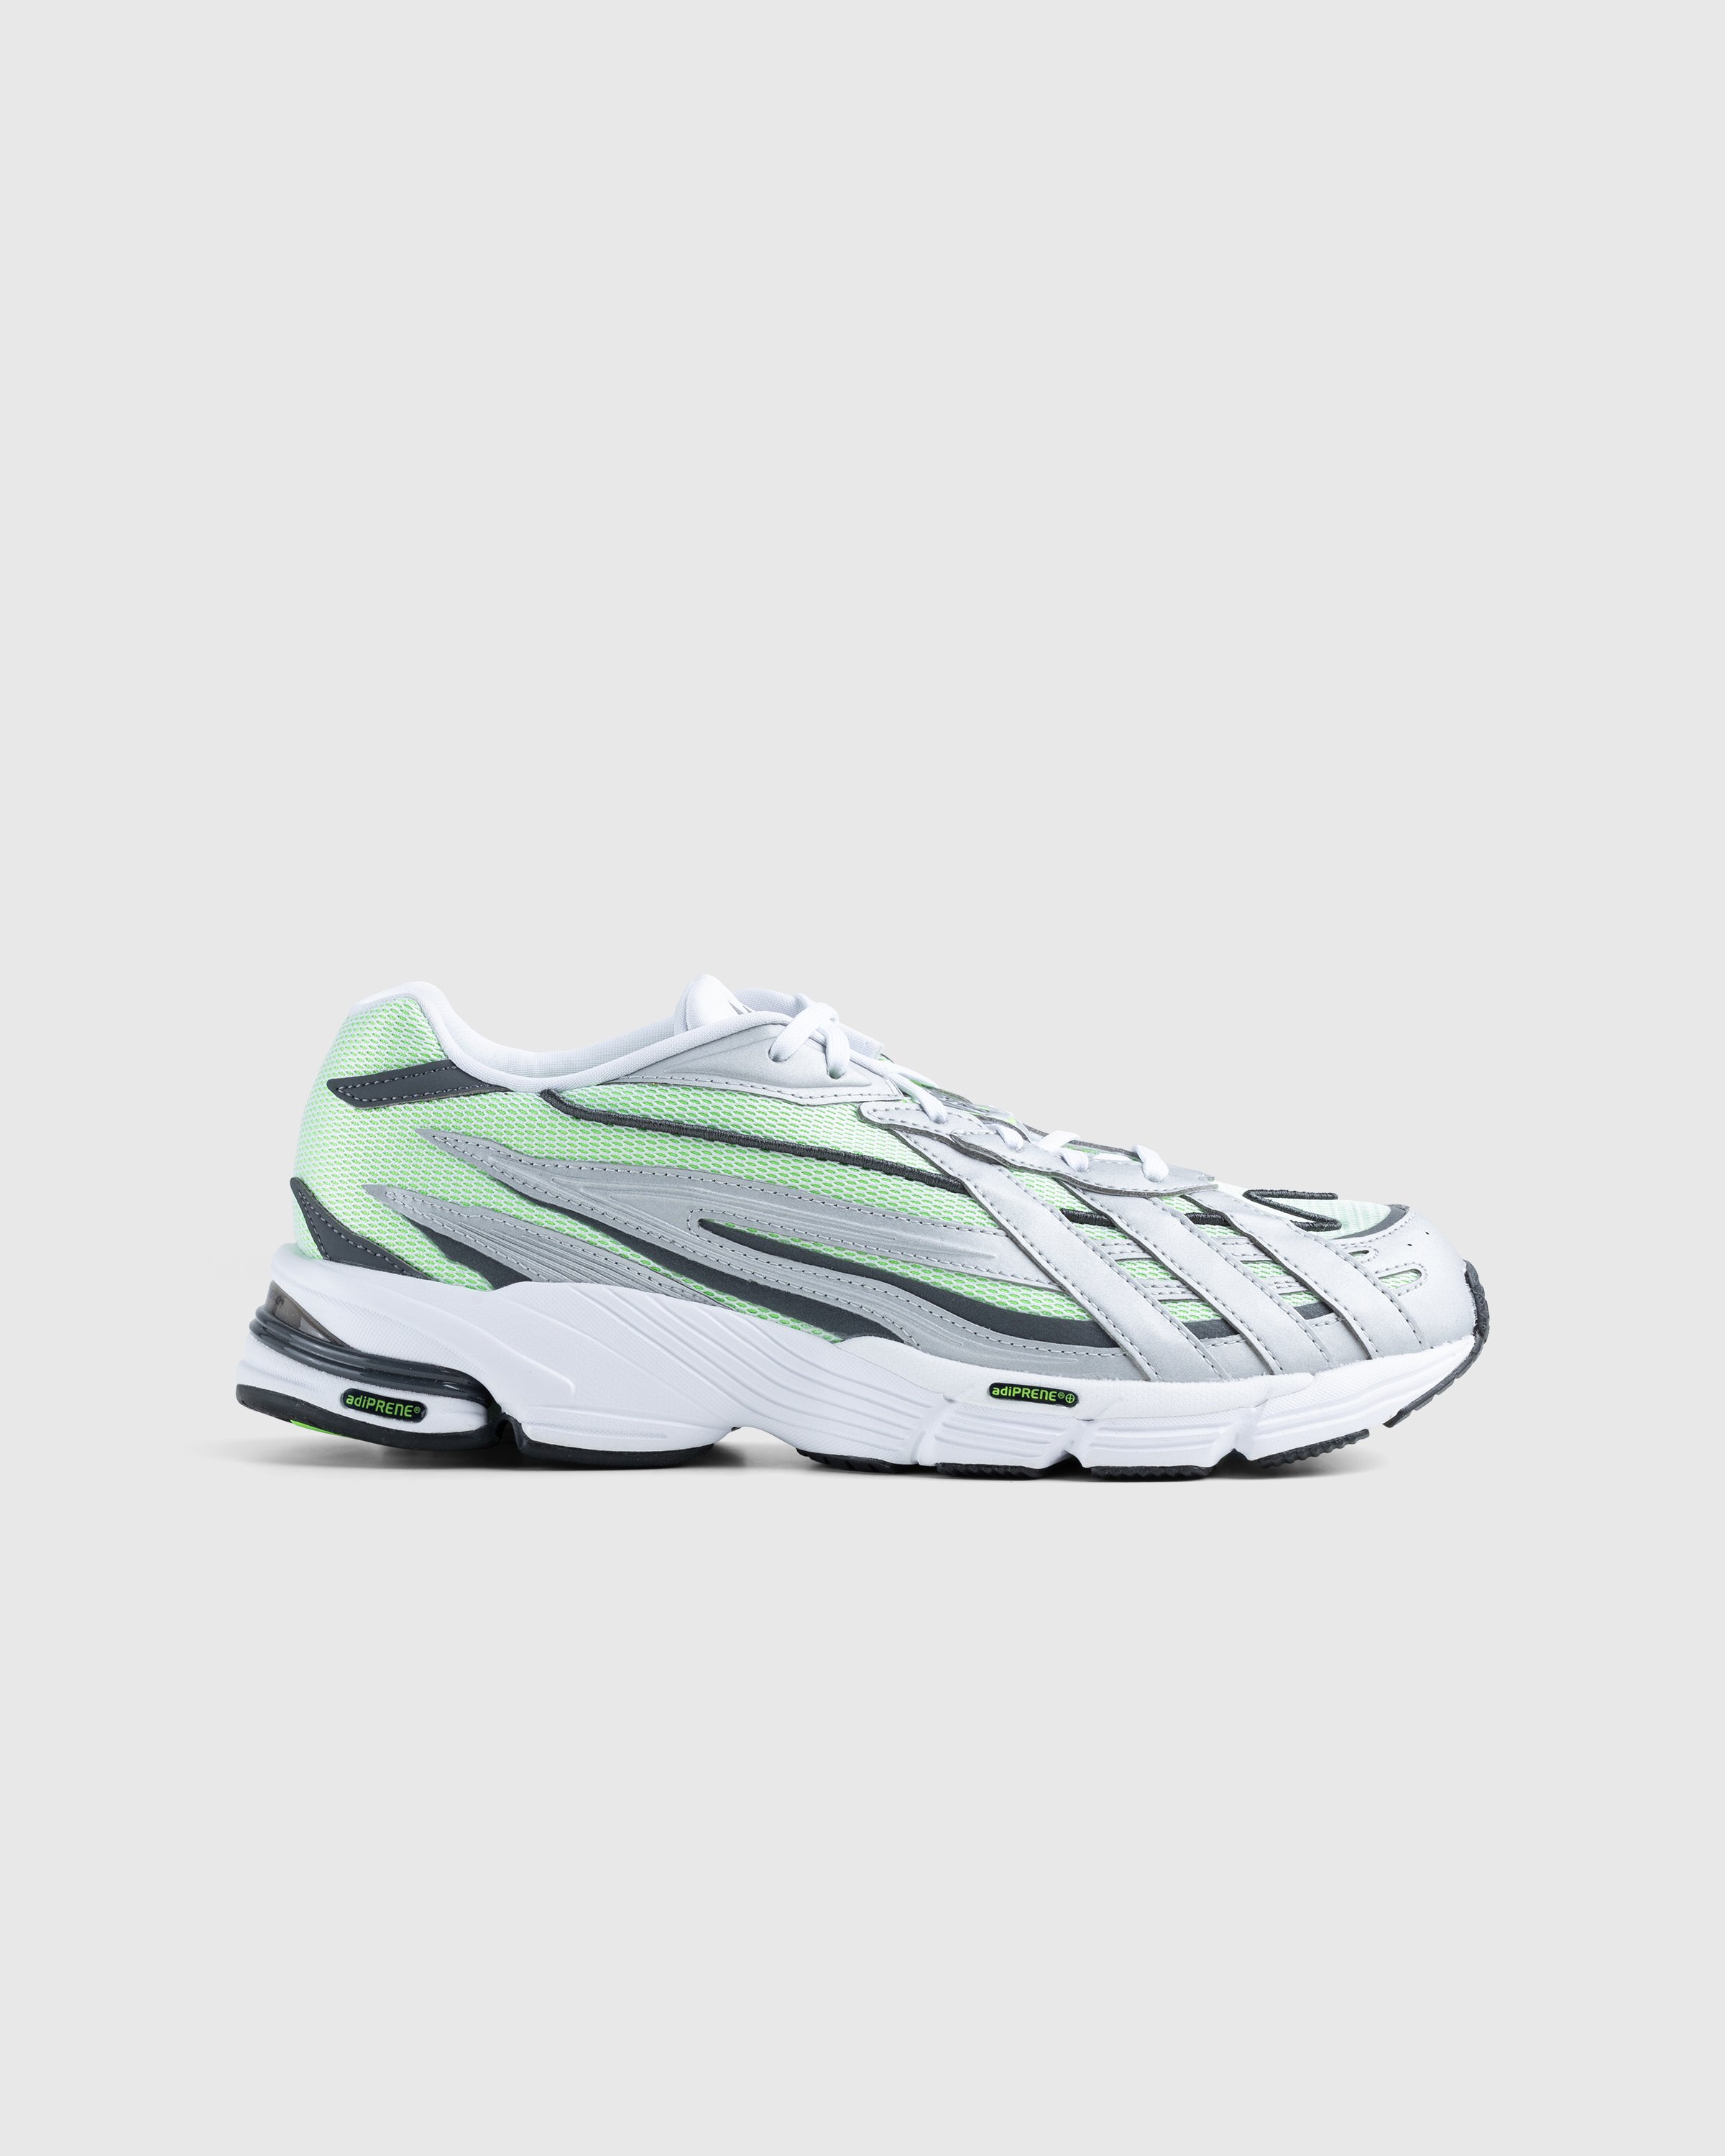 Adidas - Orketro White/Silver - Footwear - White - Image 1